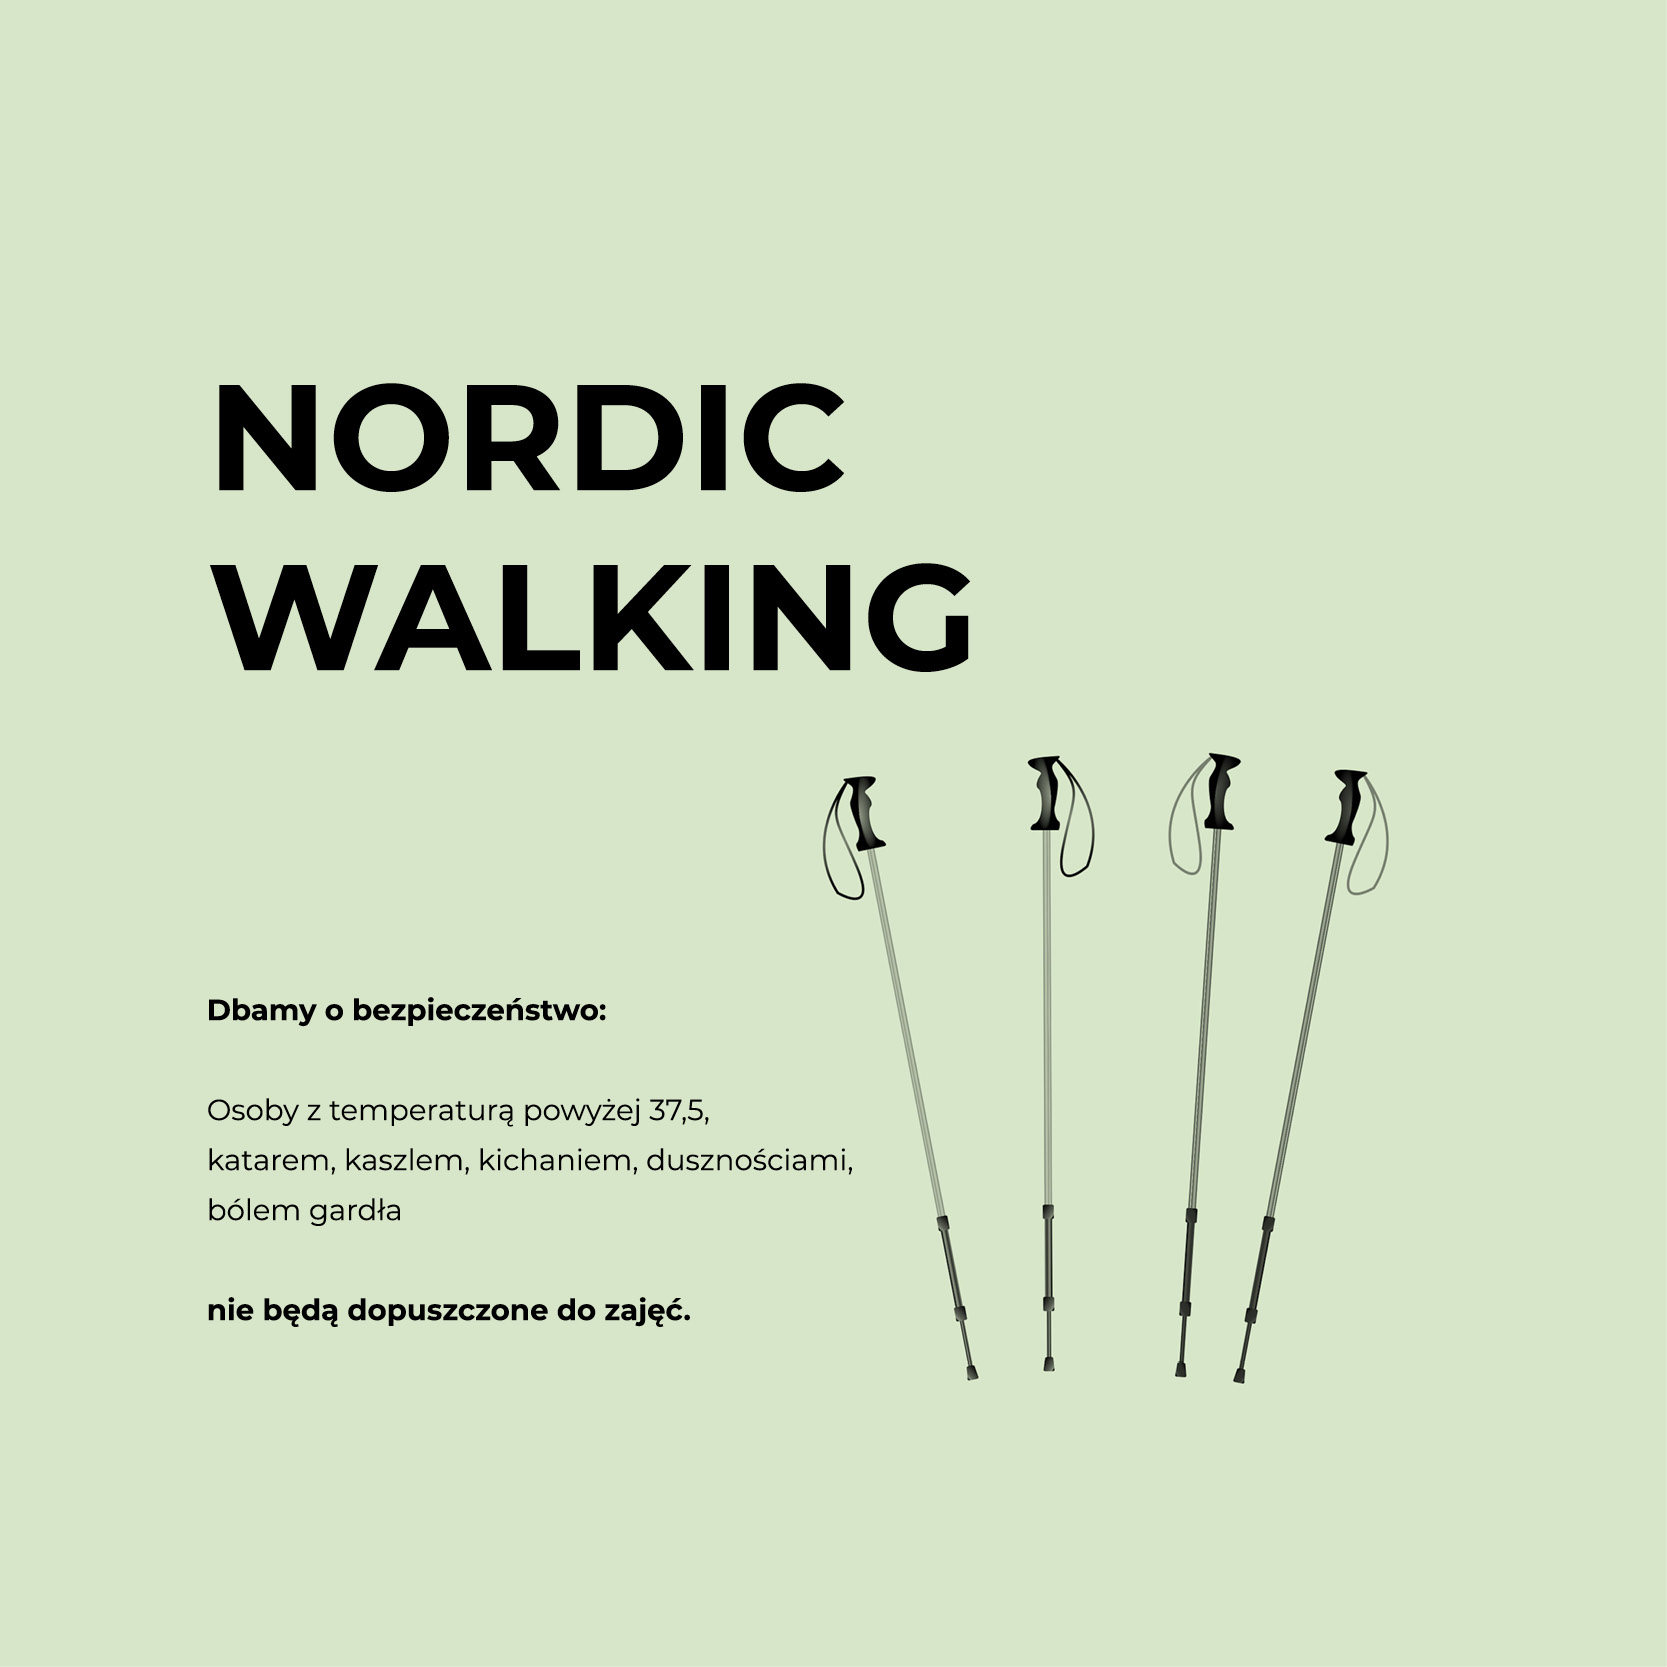 21/07 g. 9.30 | Nordic walking w SDK 